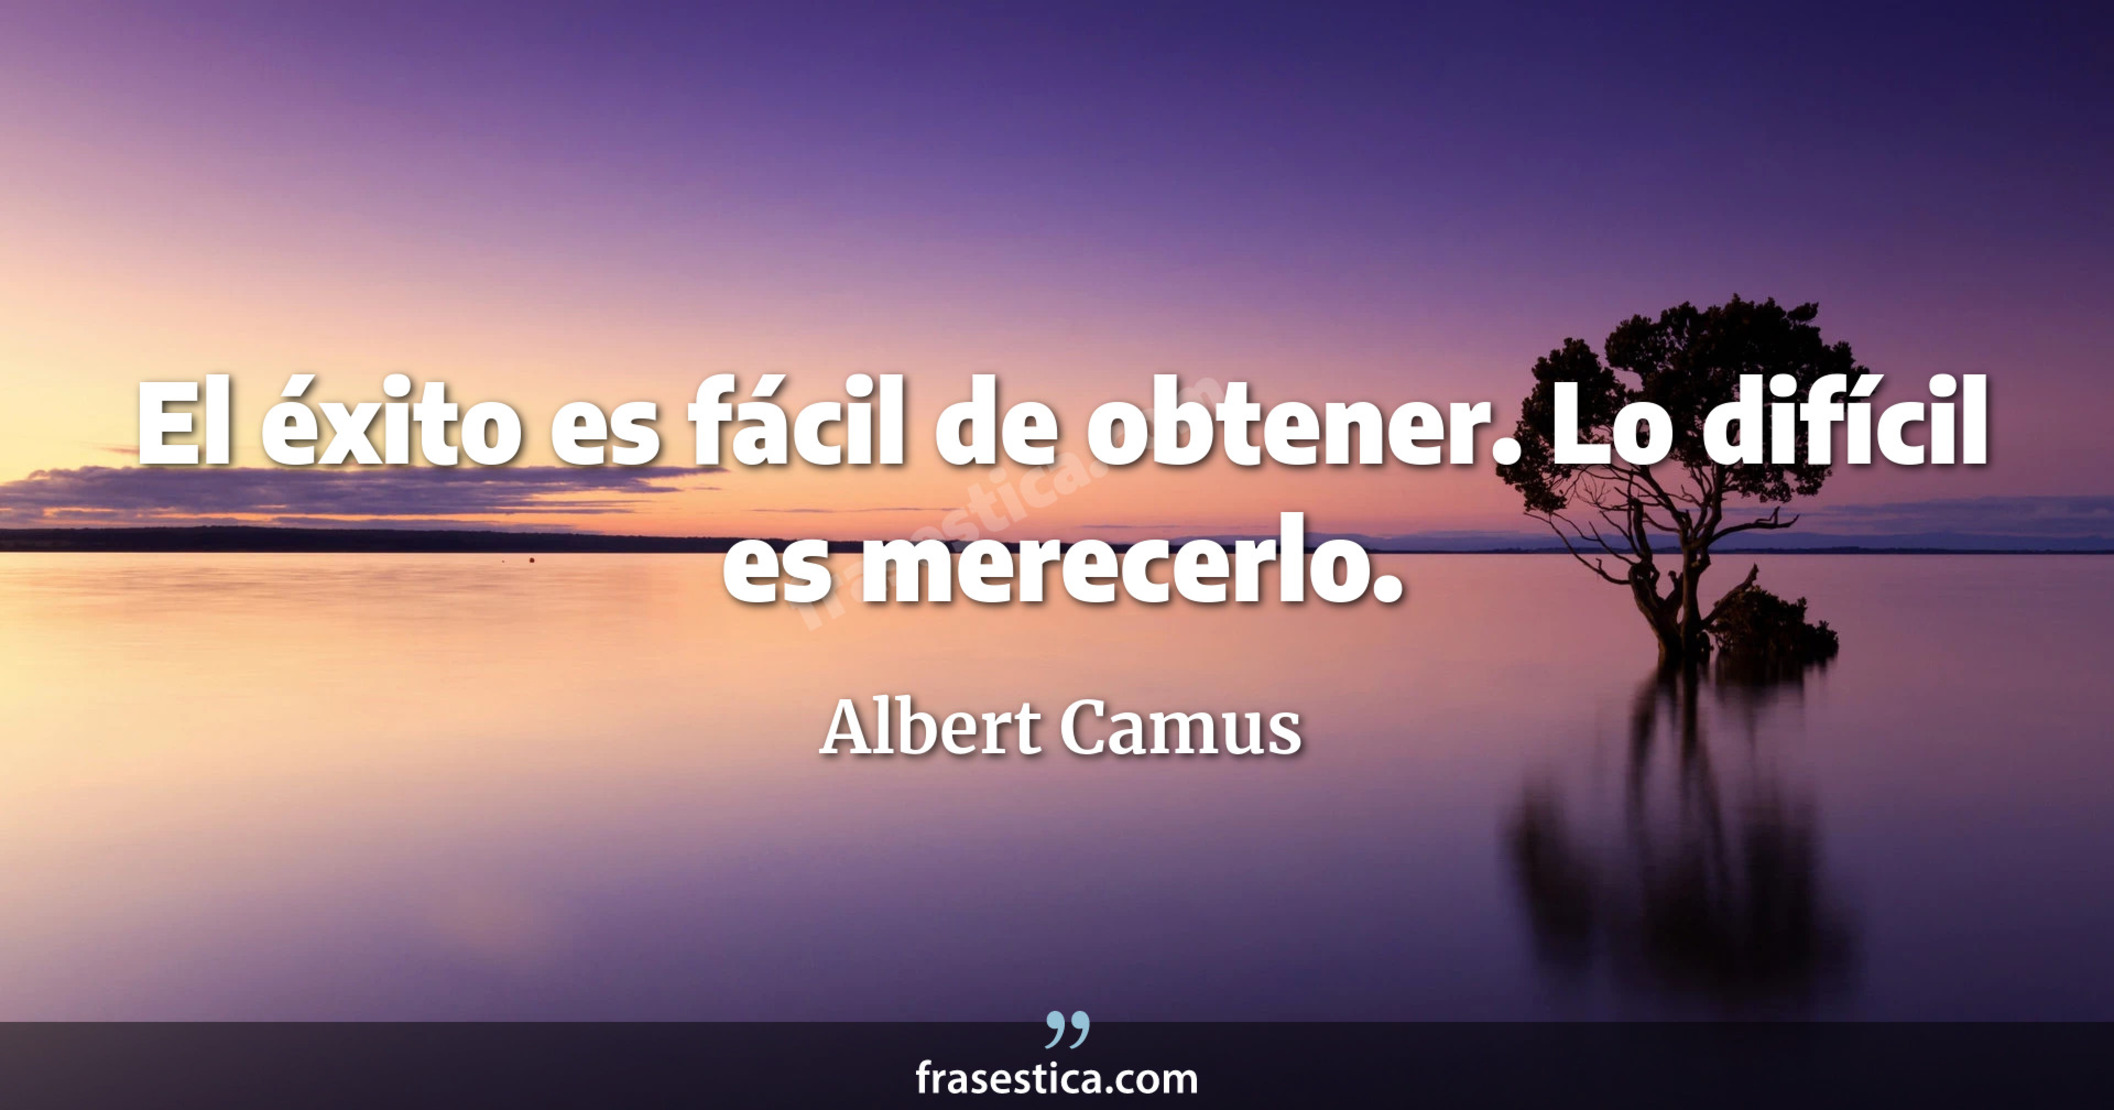 El éxito es fácil de obtener. Lo difícil es merecerlo. - Albert Camus